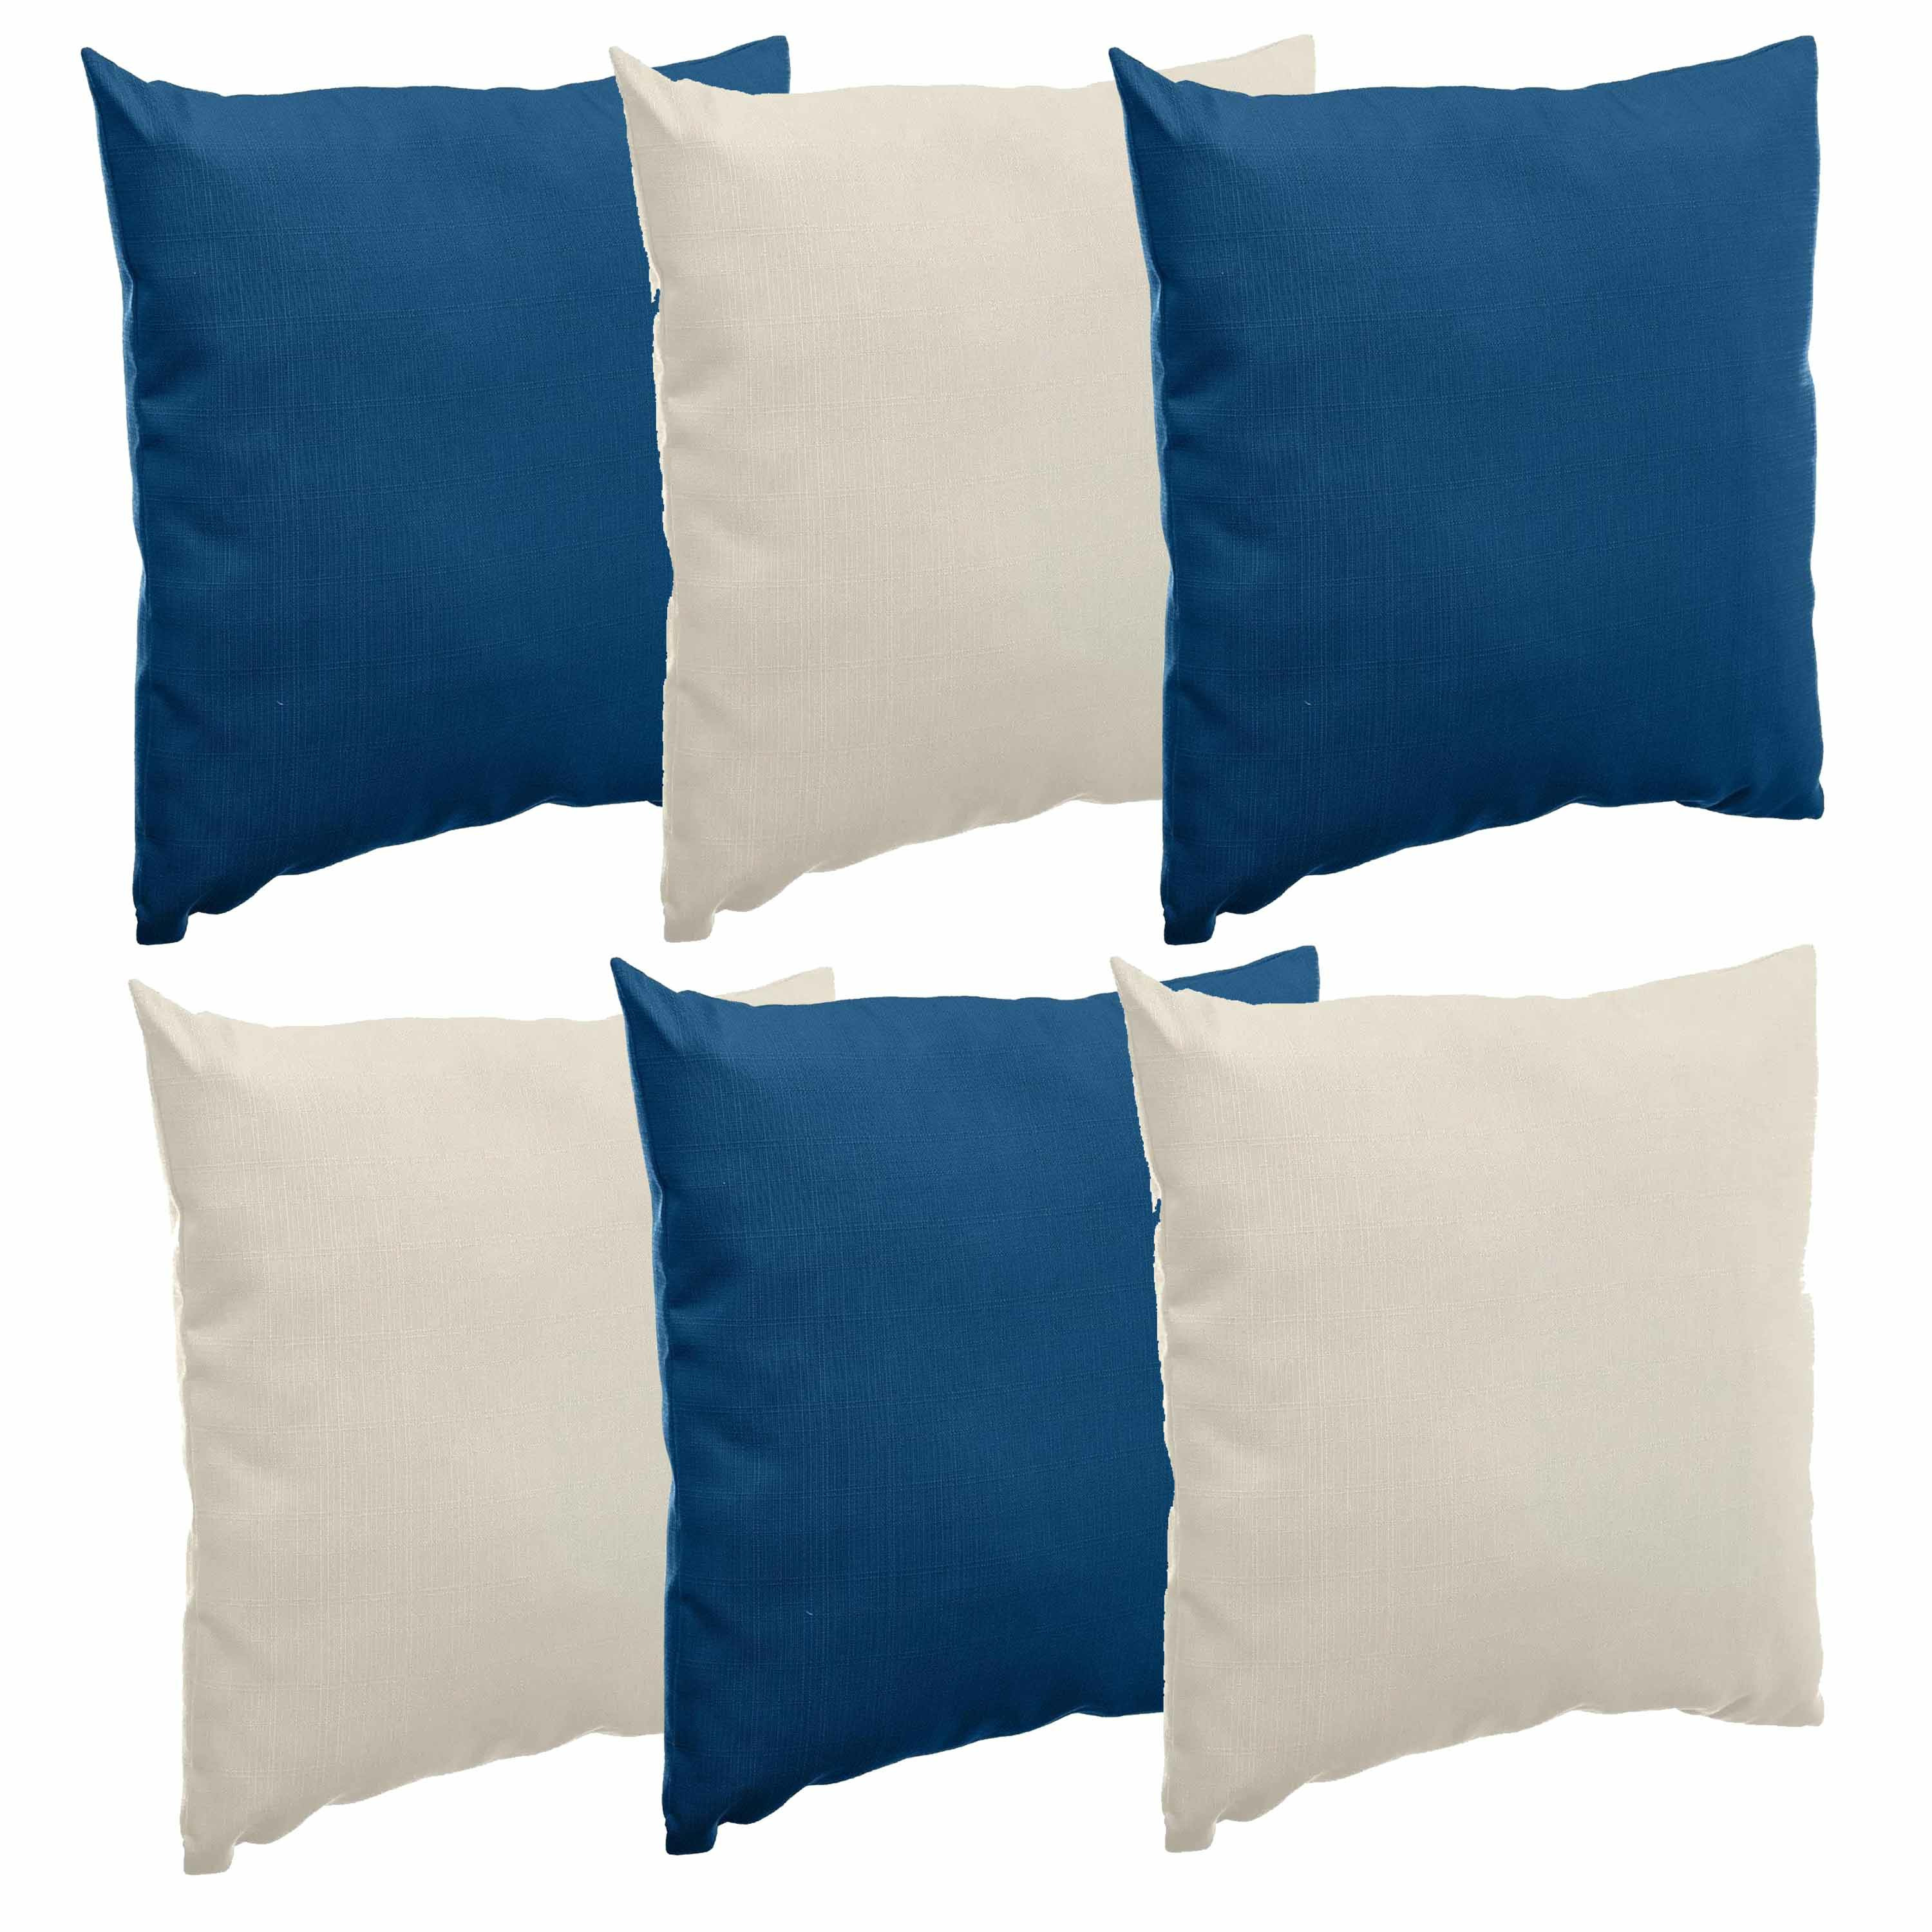 Bank-sier-tuin kussens voor binnen-buiten set 6x stuks beige-indigo blauw 40 x 40 cm